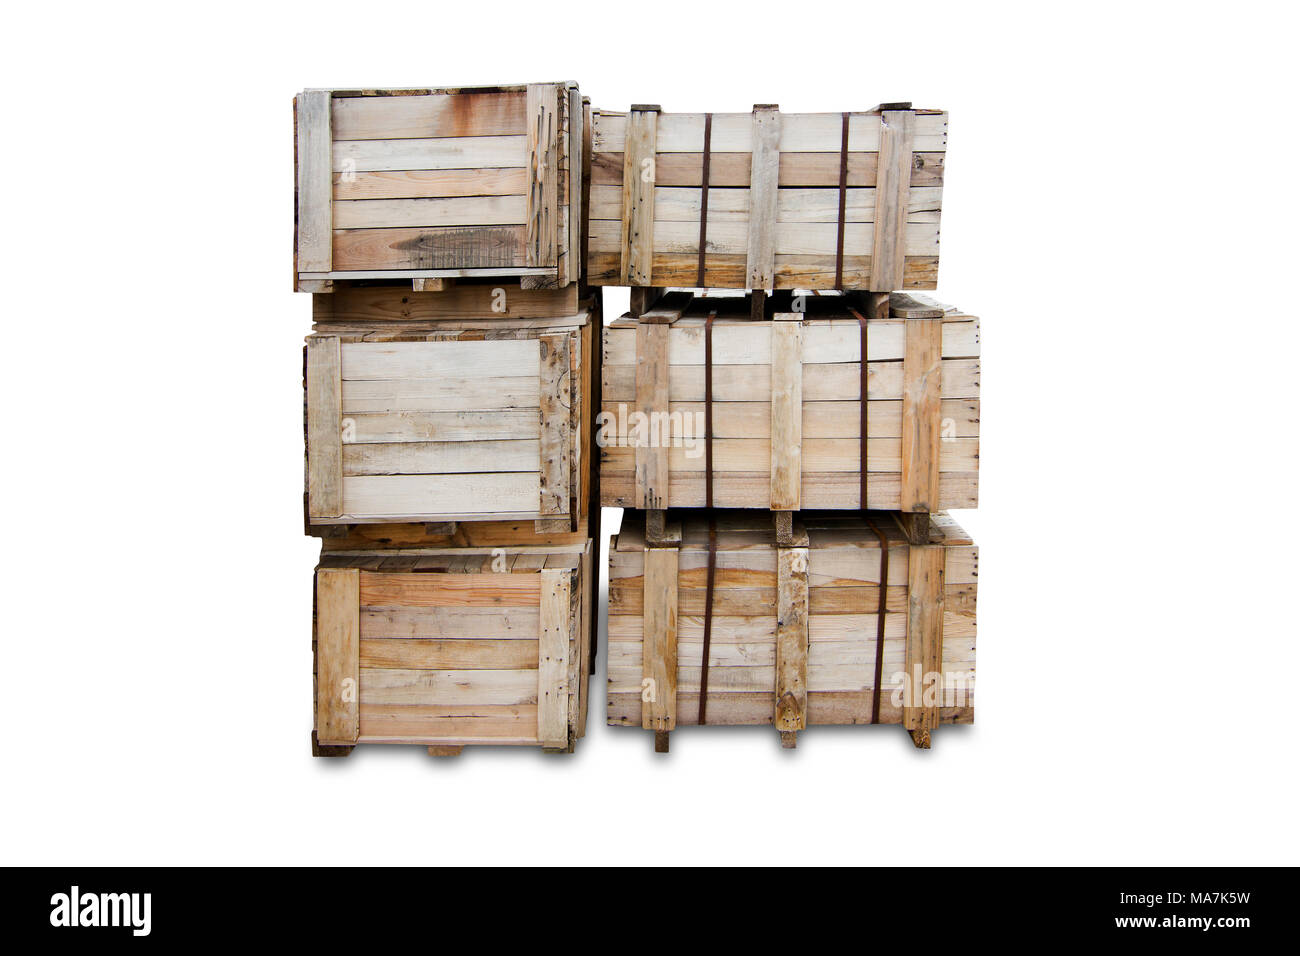 Holz Paletten - Kisten für den Transport - Starke cargo Security isoliert - Weißer Hintergrund Stockfoto